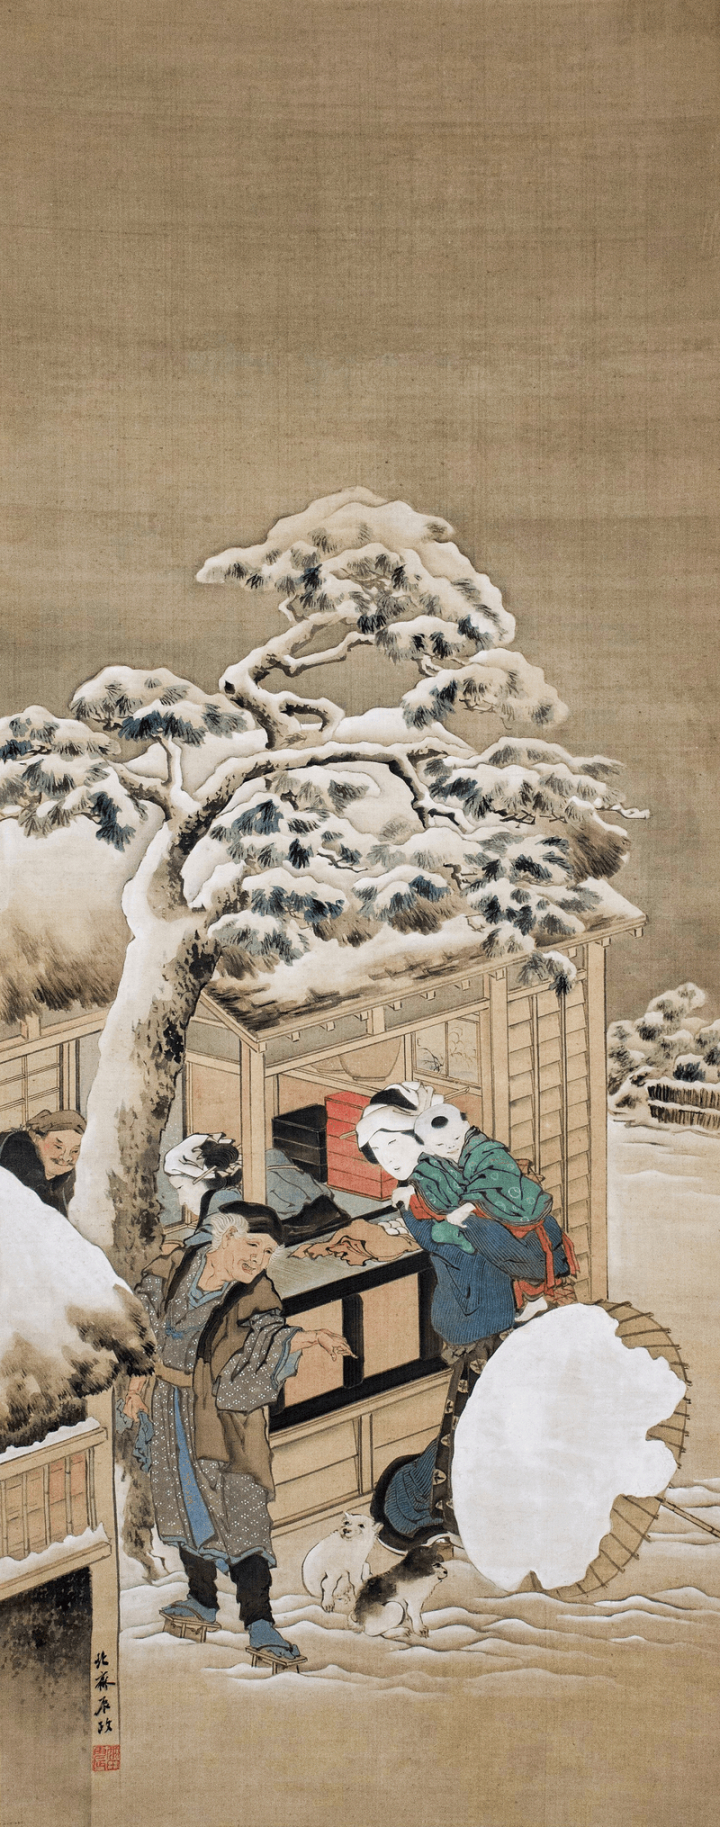 art,vintage,public domain,vintage illustration,nature,people,illustration,business,retro,hokusai,landscape,snow,rawpixel